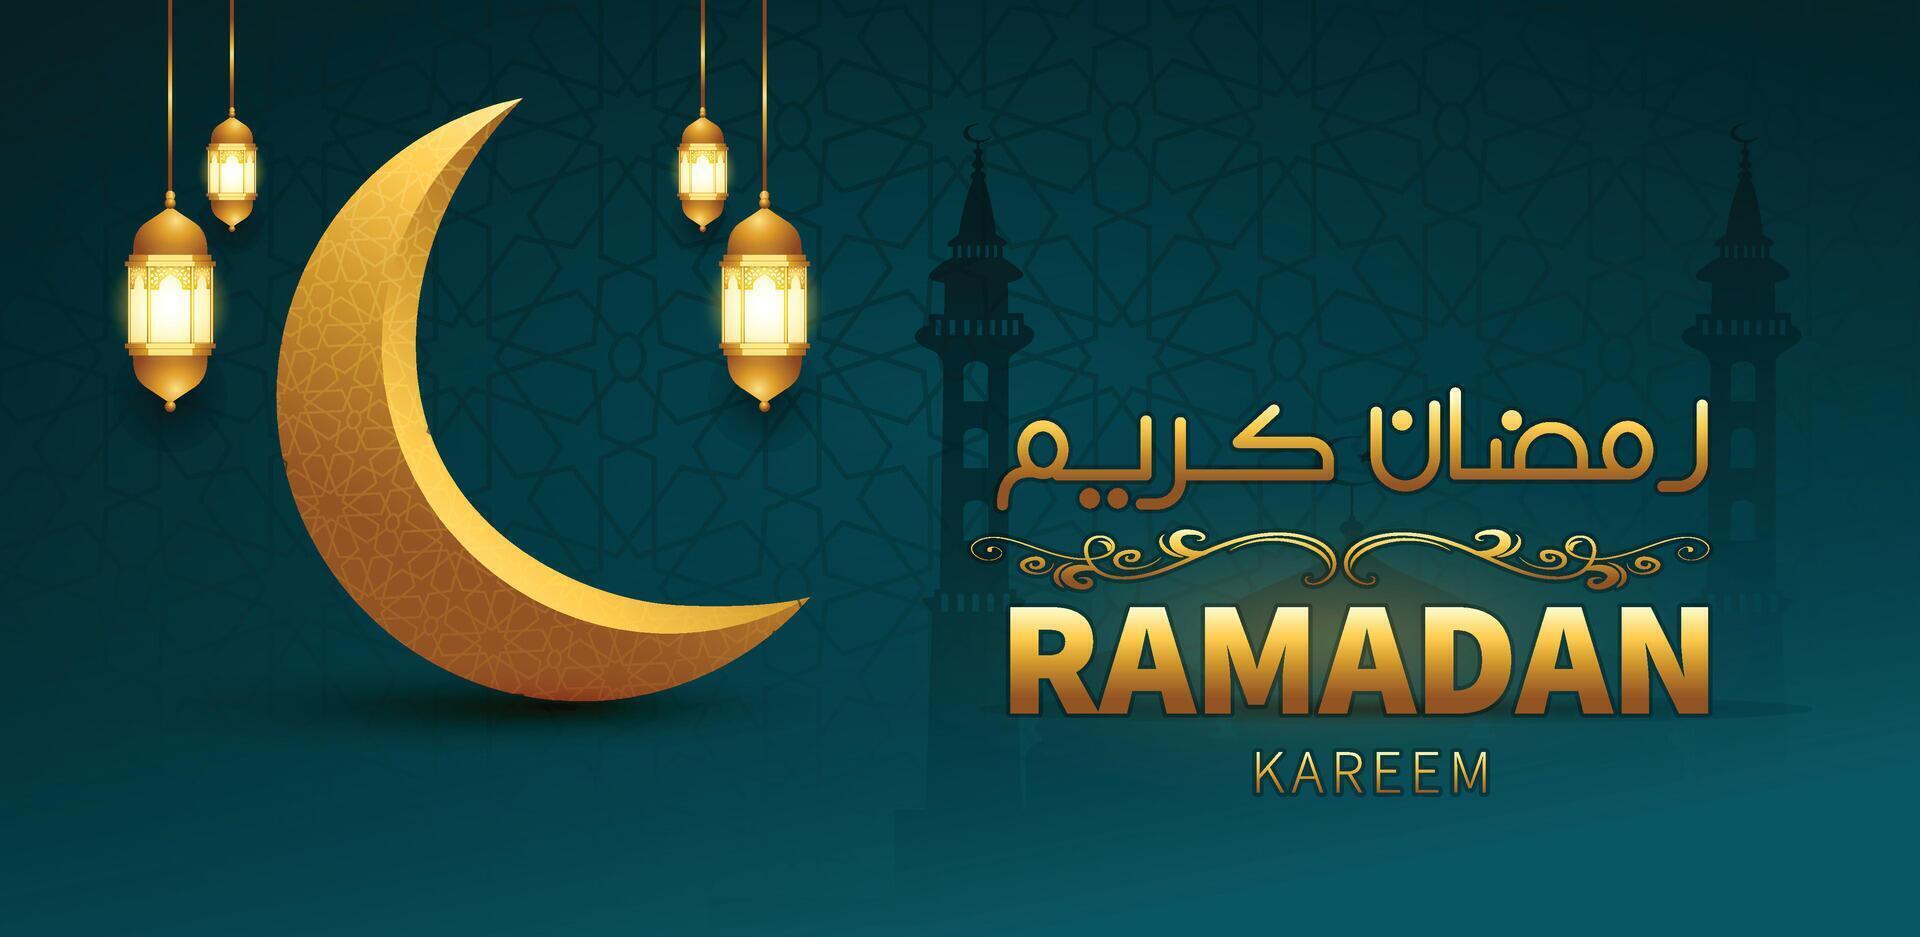 Ramadan kareem goud schoonschrift groet kaart banier ontwerp vector